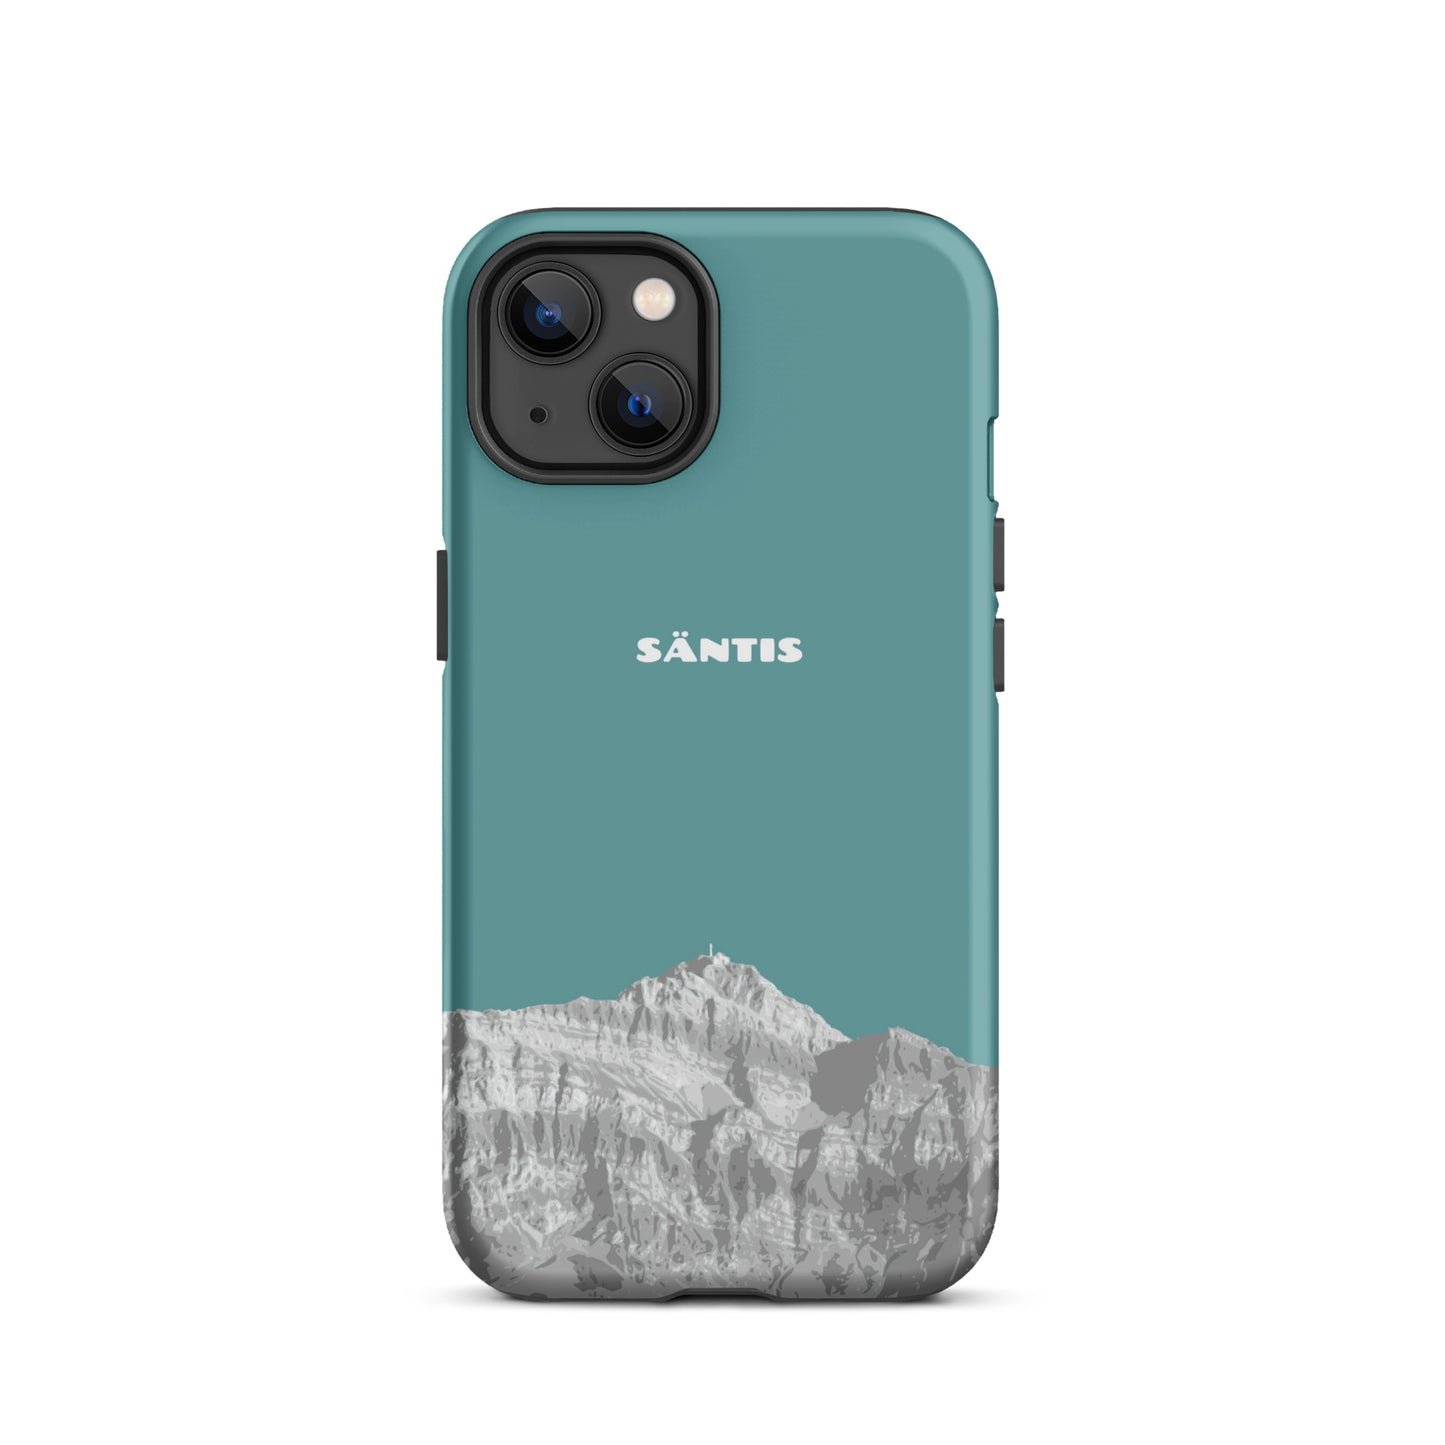 Hülle für das iPhone 13 von Apple in der Farbe Kadettenblau, dass den Säntis im Alpstein zeigt.